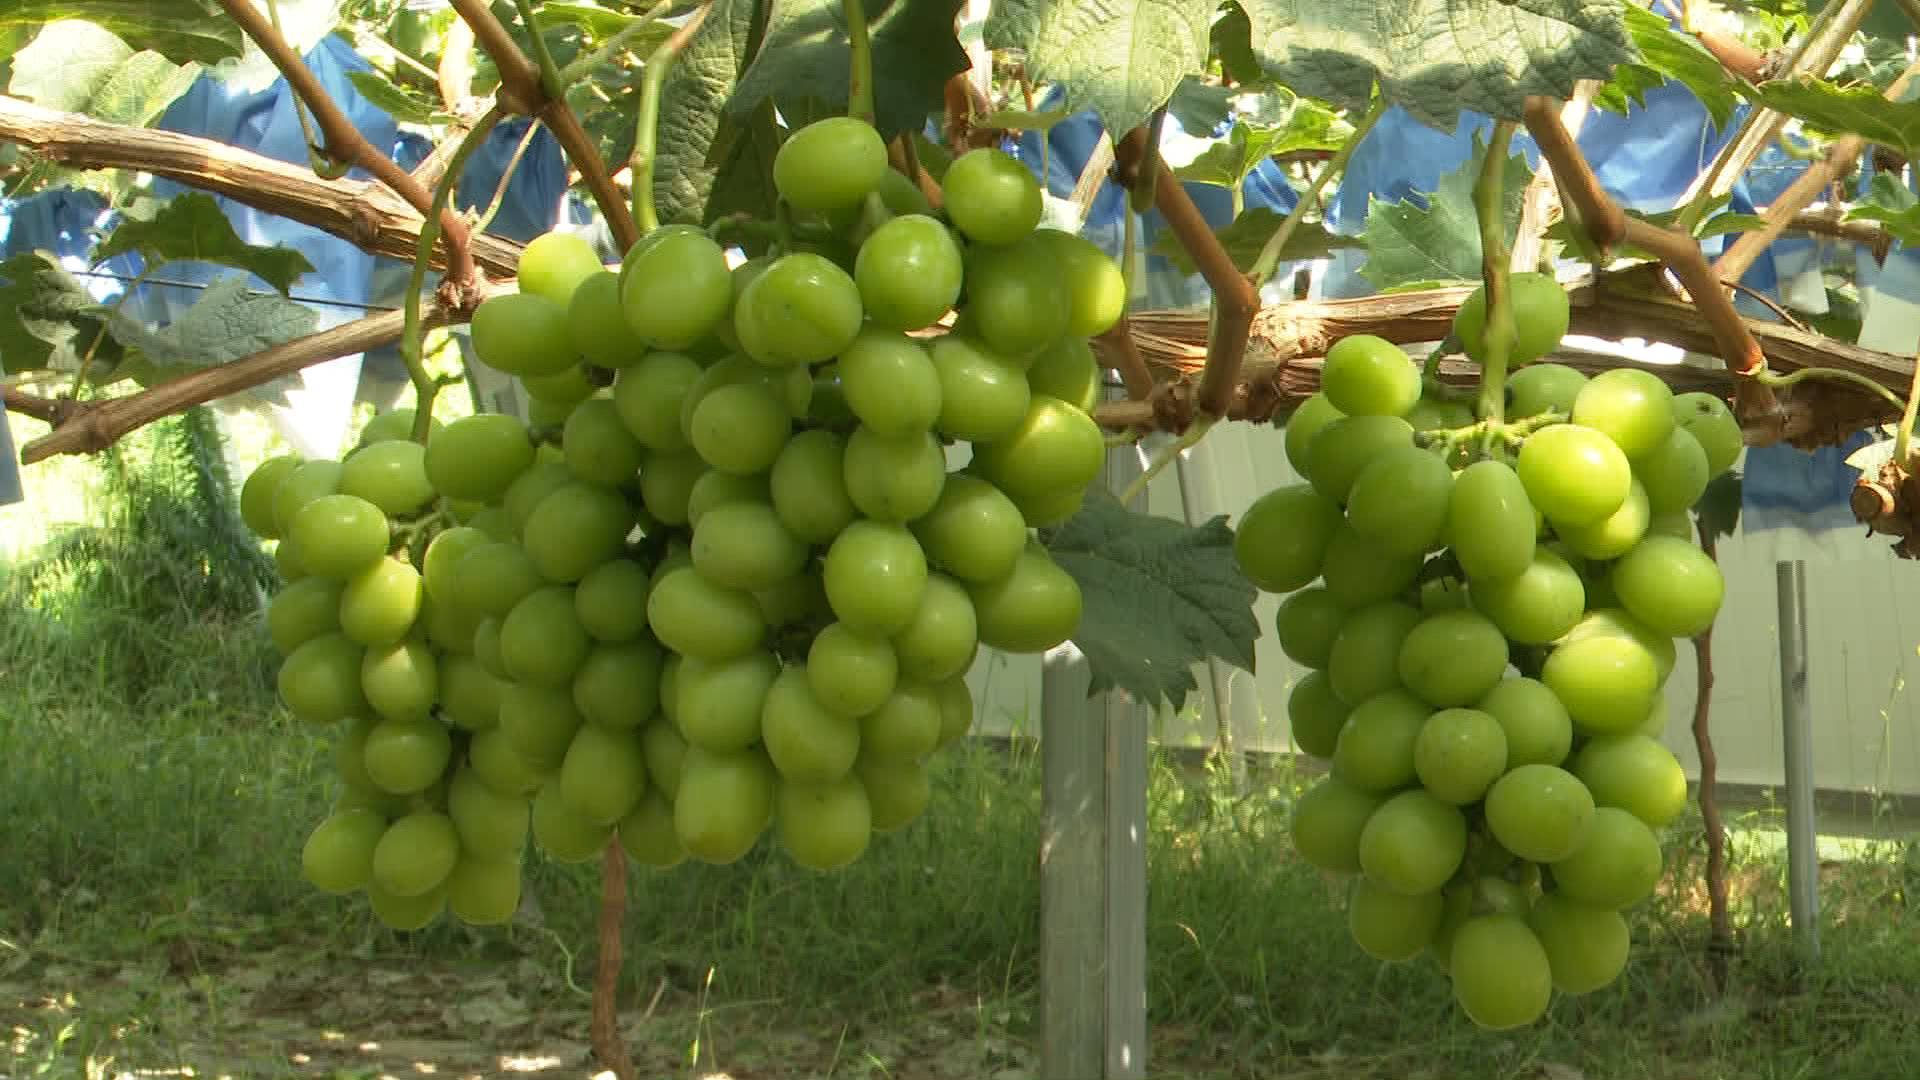 葡萄中的“爱马仕”即将上市 龙口果蔬专业合作社让村民足不出户增收致富